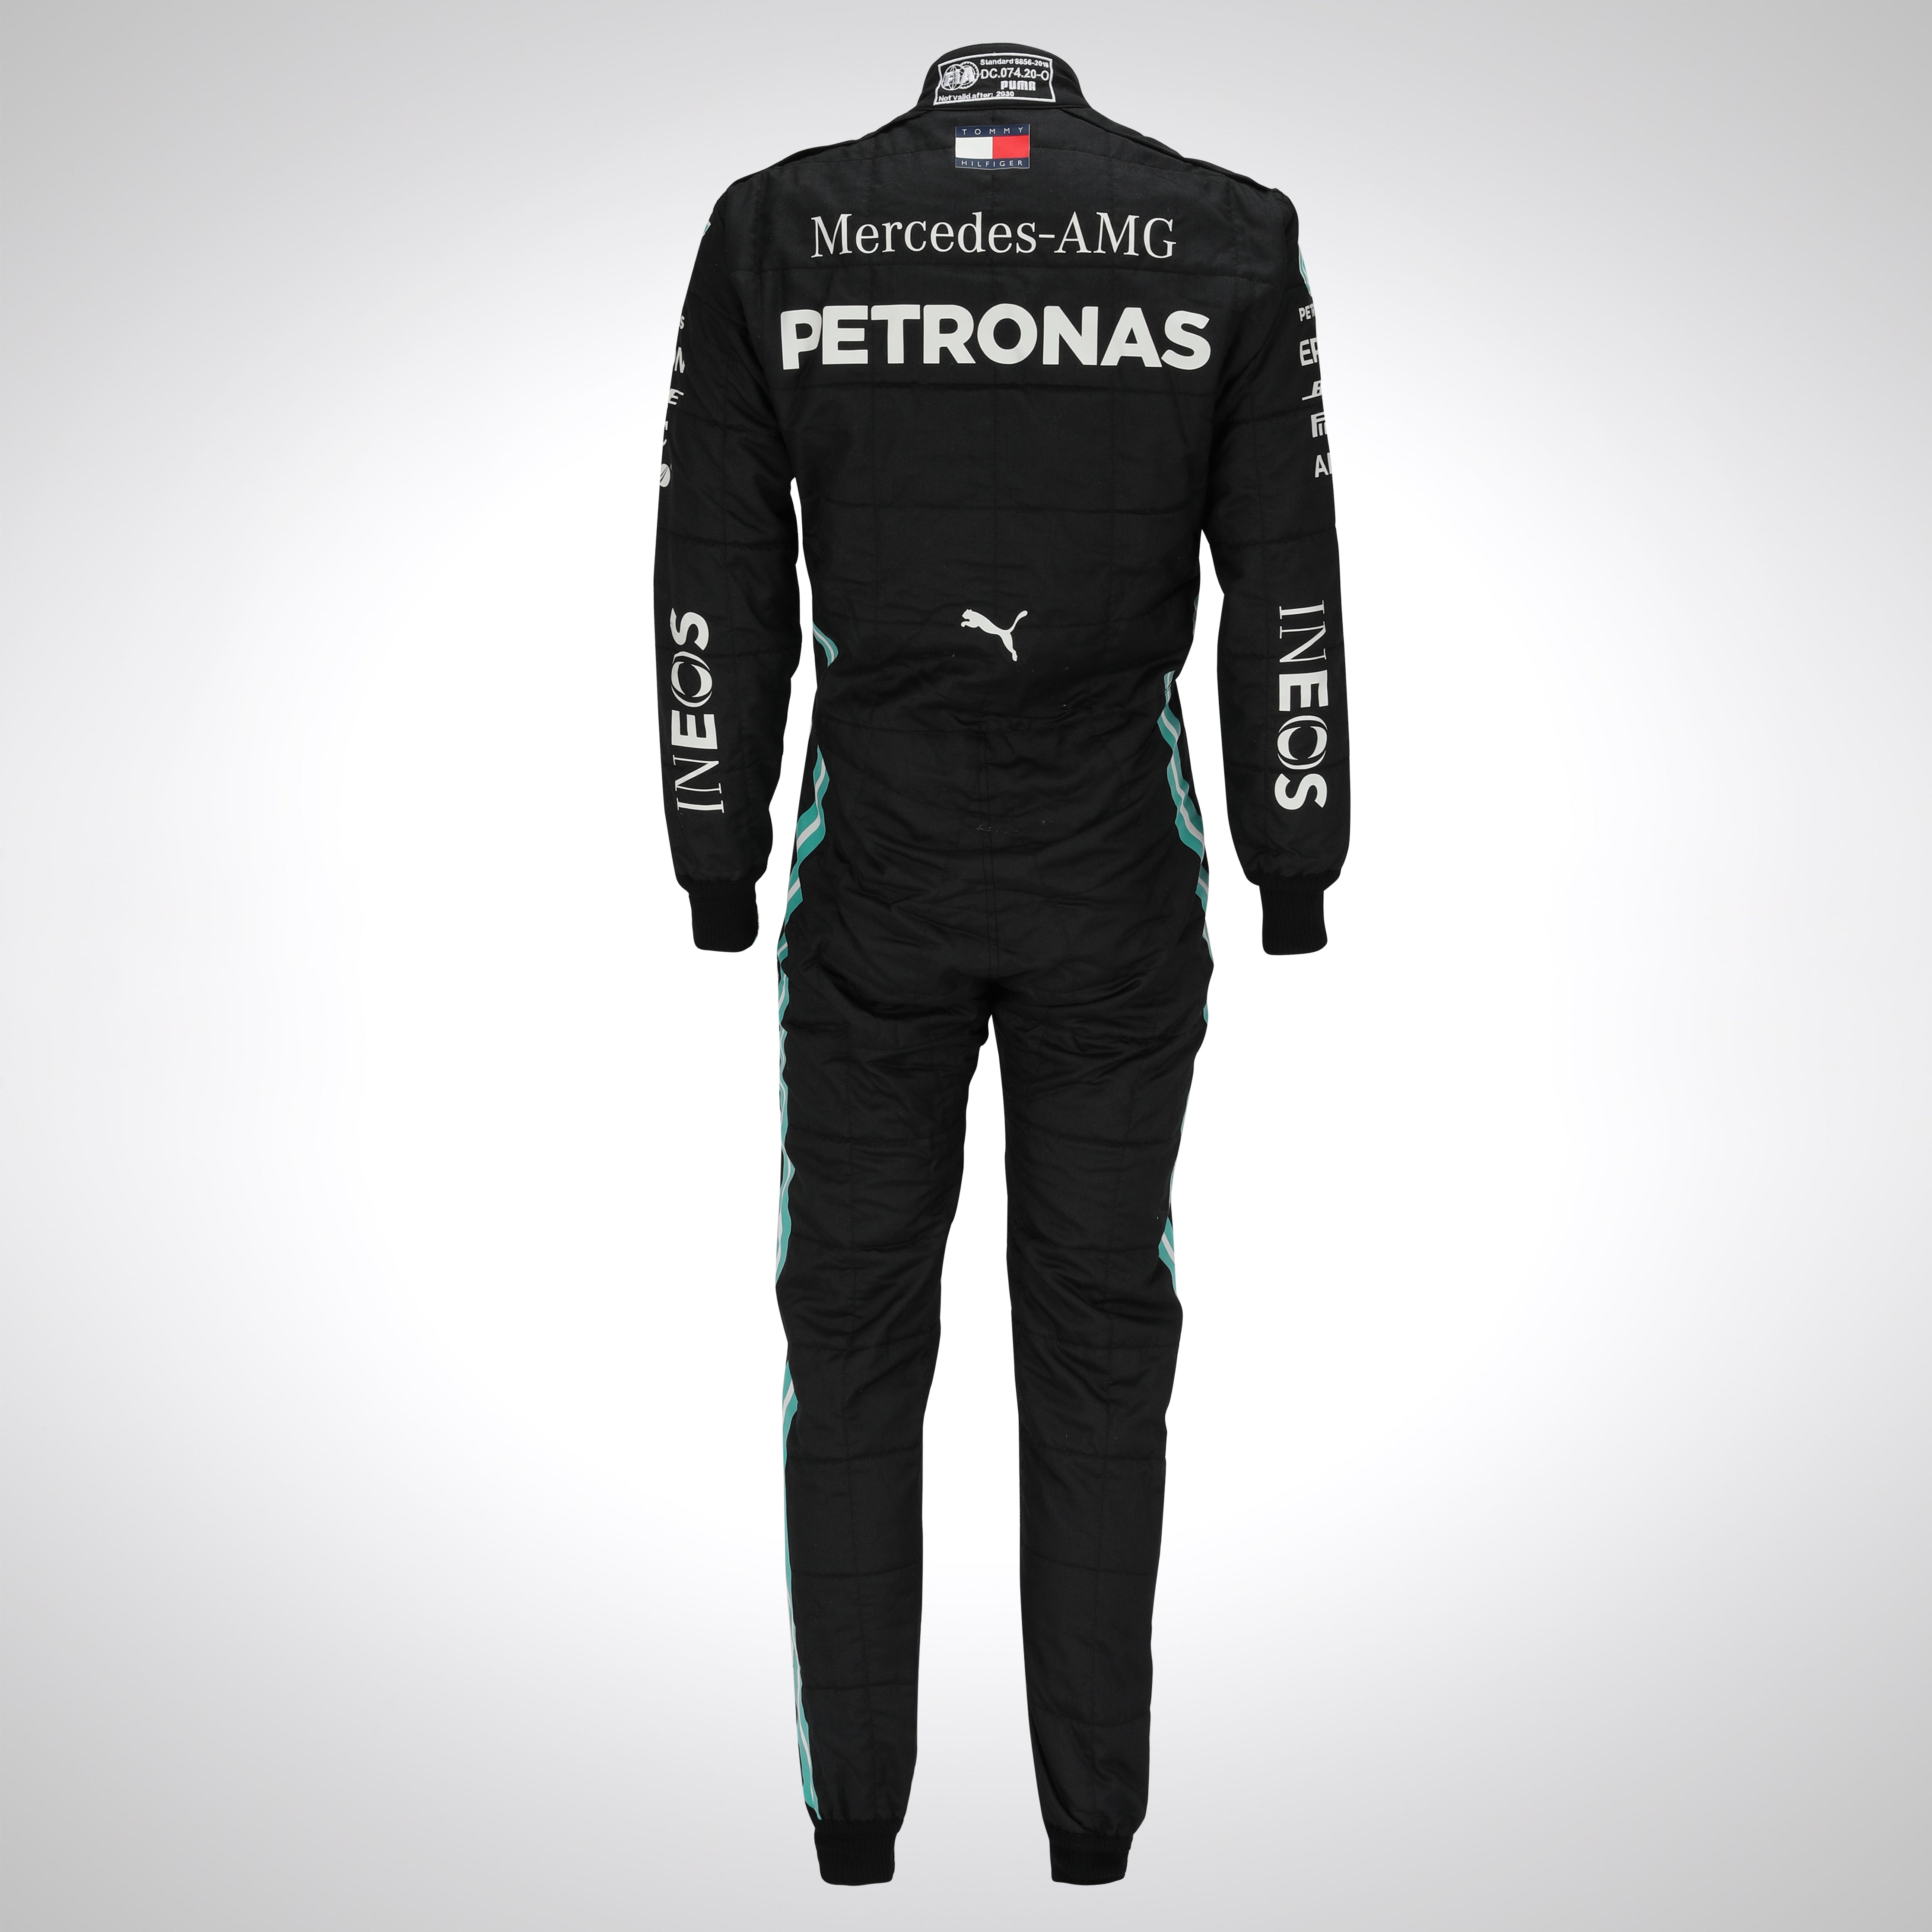 Valtteri Bottas 2020 Mercedes-AMG Petronas F1 Team Grand Prix Used Suit - Austrian GP